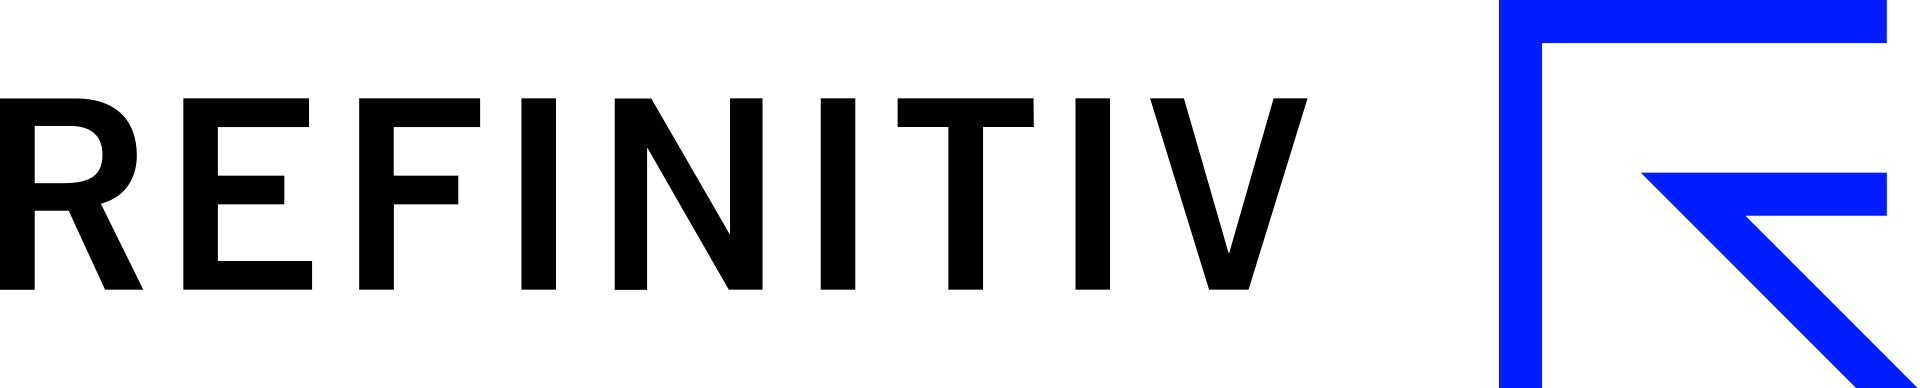 Refinitiv Brand Logo